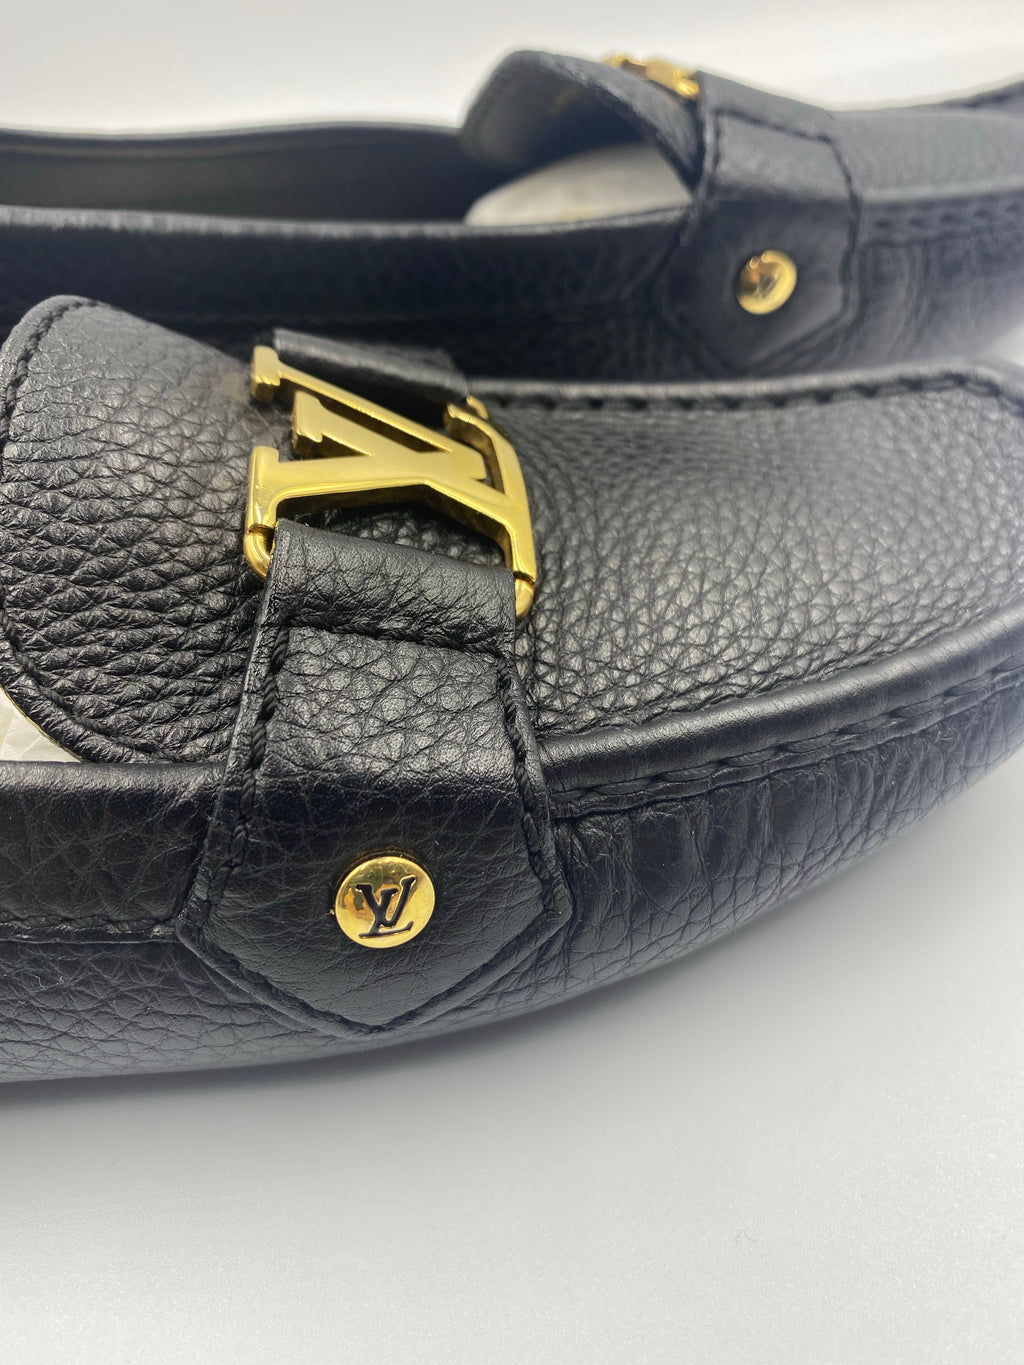 Louis Vuitton, Shoes, Louis Vuitton Black Leather Mens Loafer Slip On Dress  Shoes Size 95